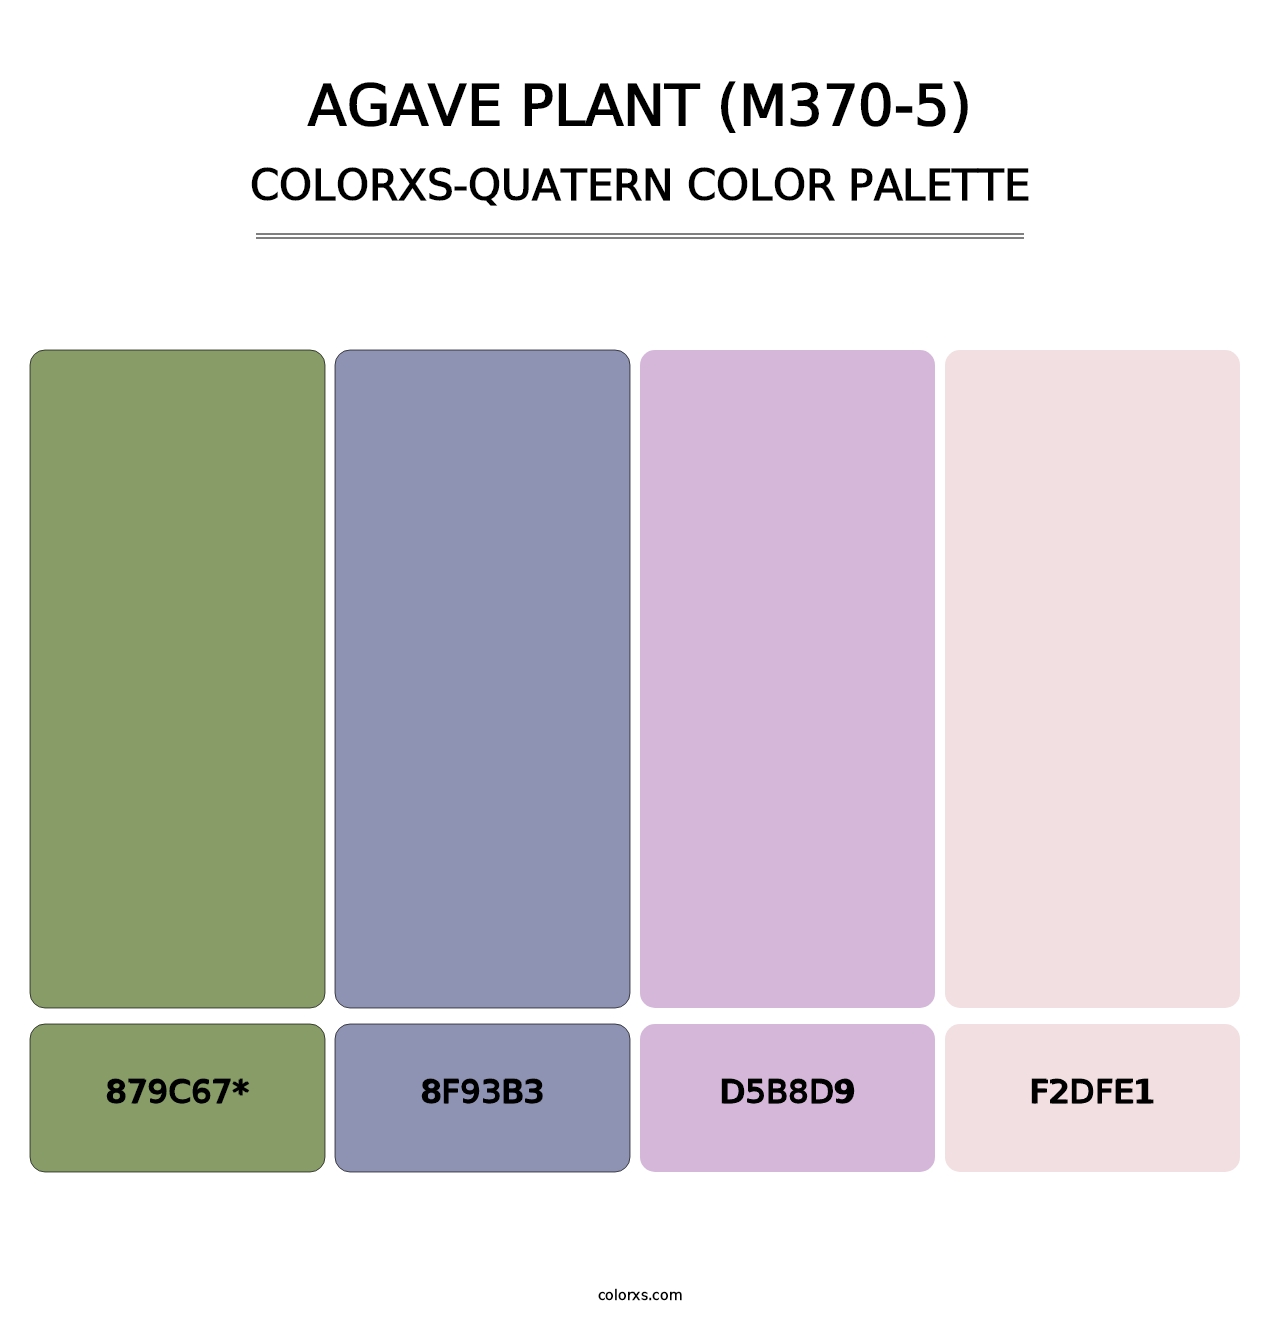 Agave Plant (M370-5) - Colorxs Quatern Palette